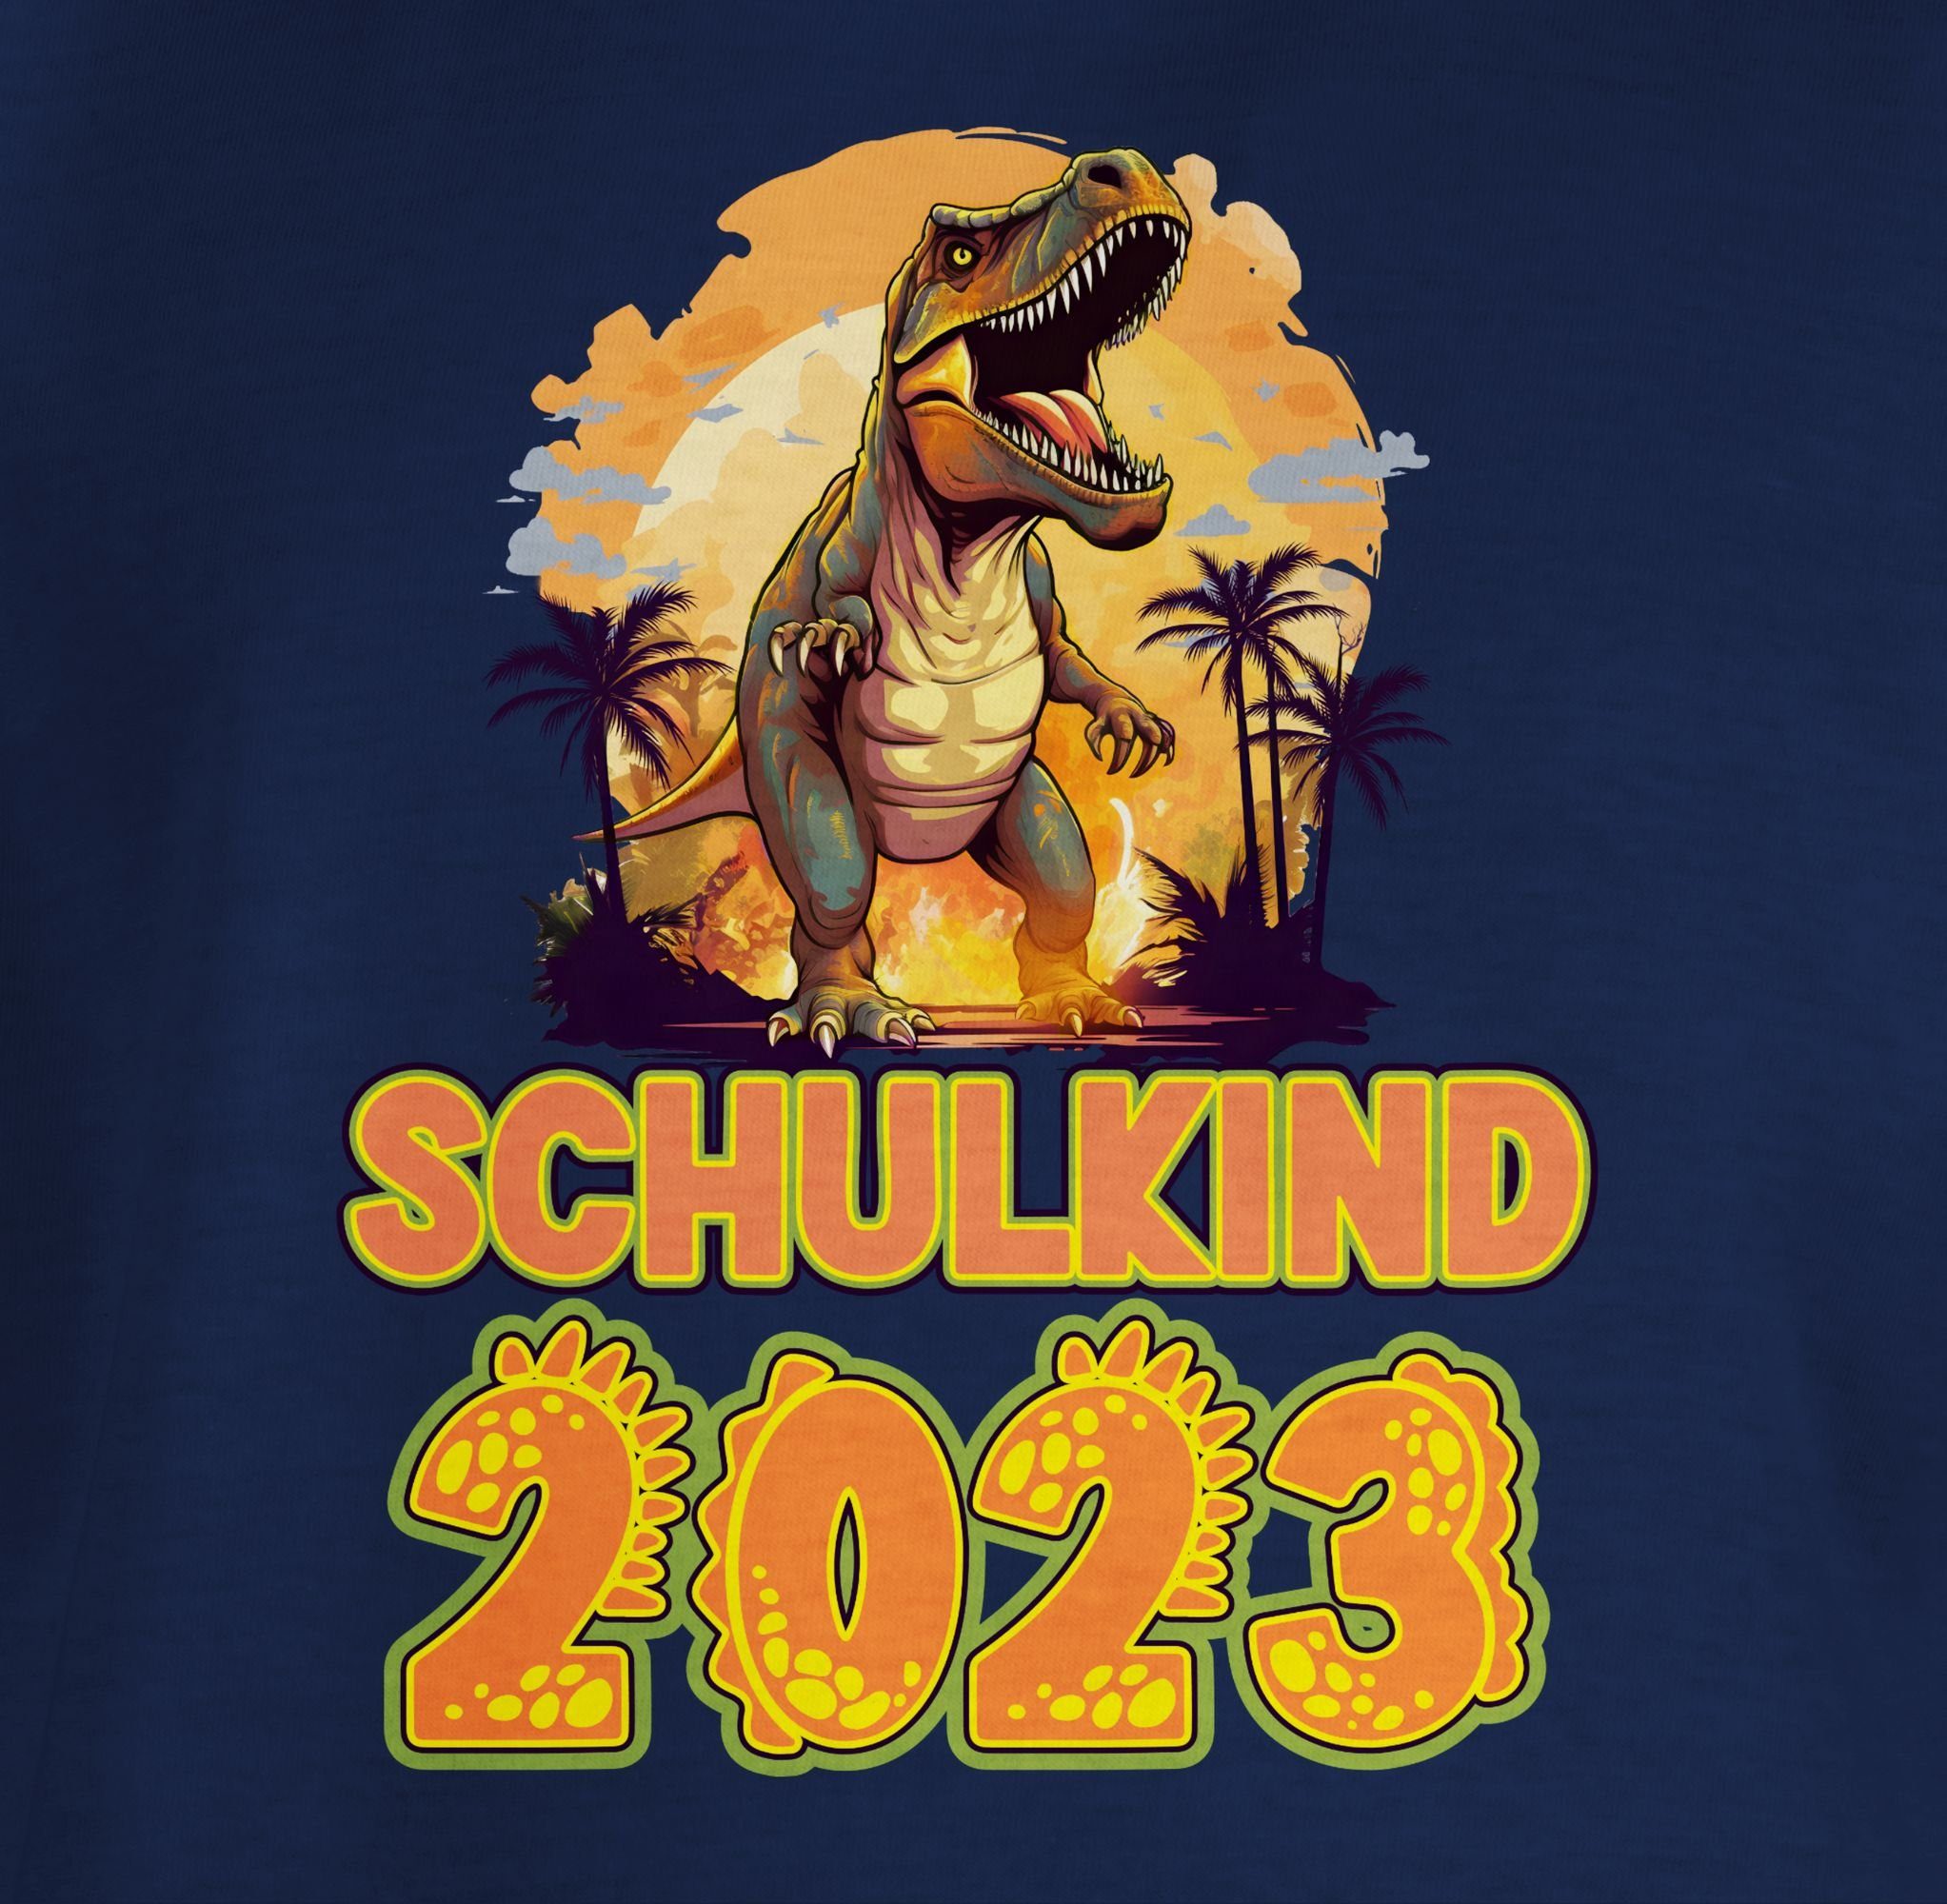 Shirtracer T-Shirt Schulkind 2023 Dinosaurier Junge Blau 1 Einschulung Geschenke Saurier Dino Navy Schulanfang